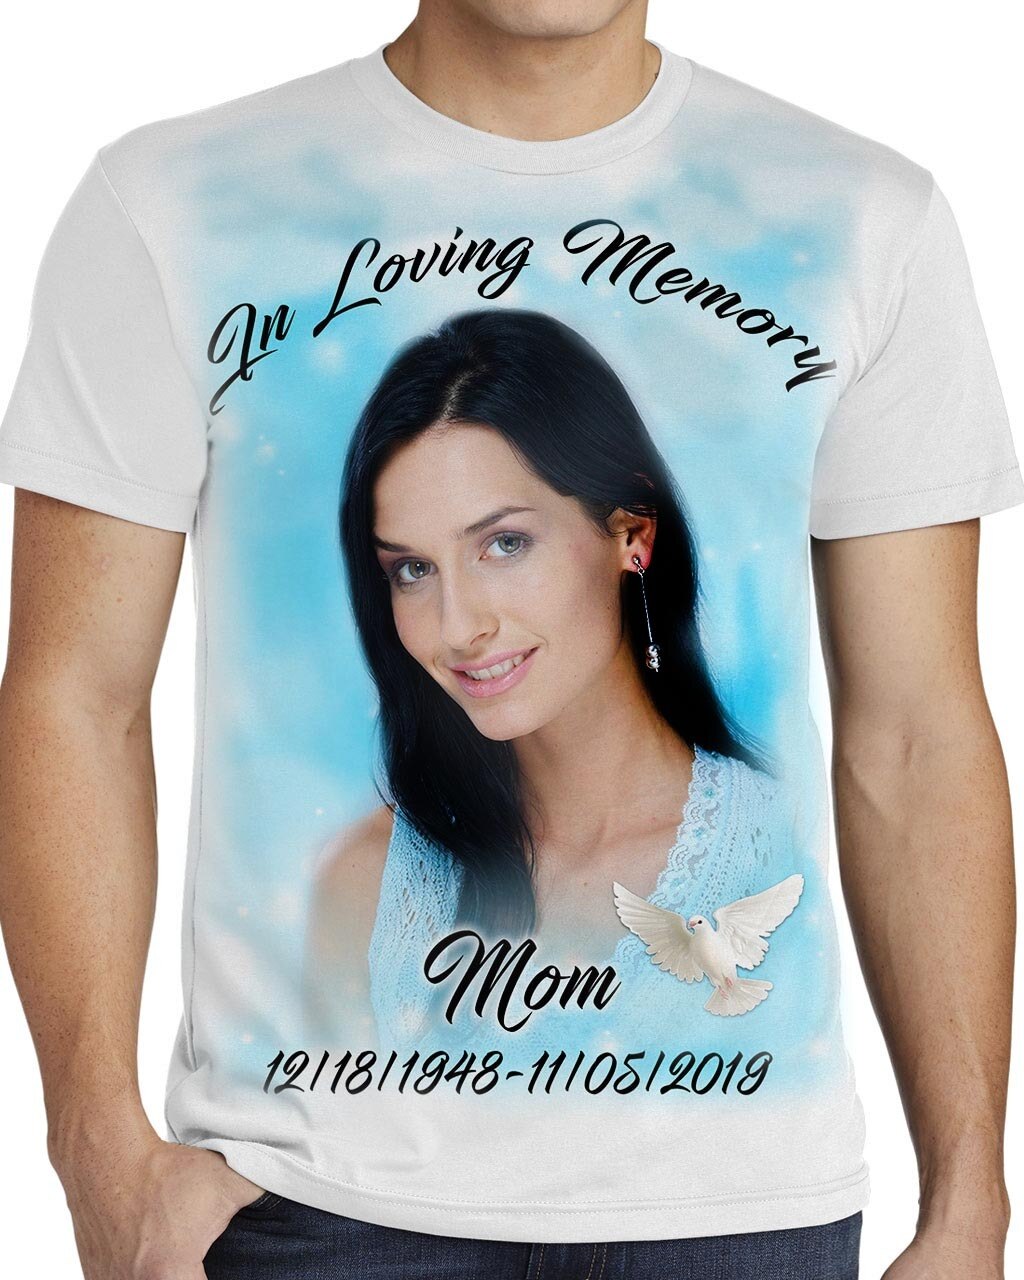 MC In Loving Memory T-Shirt